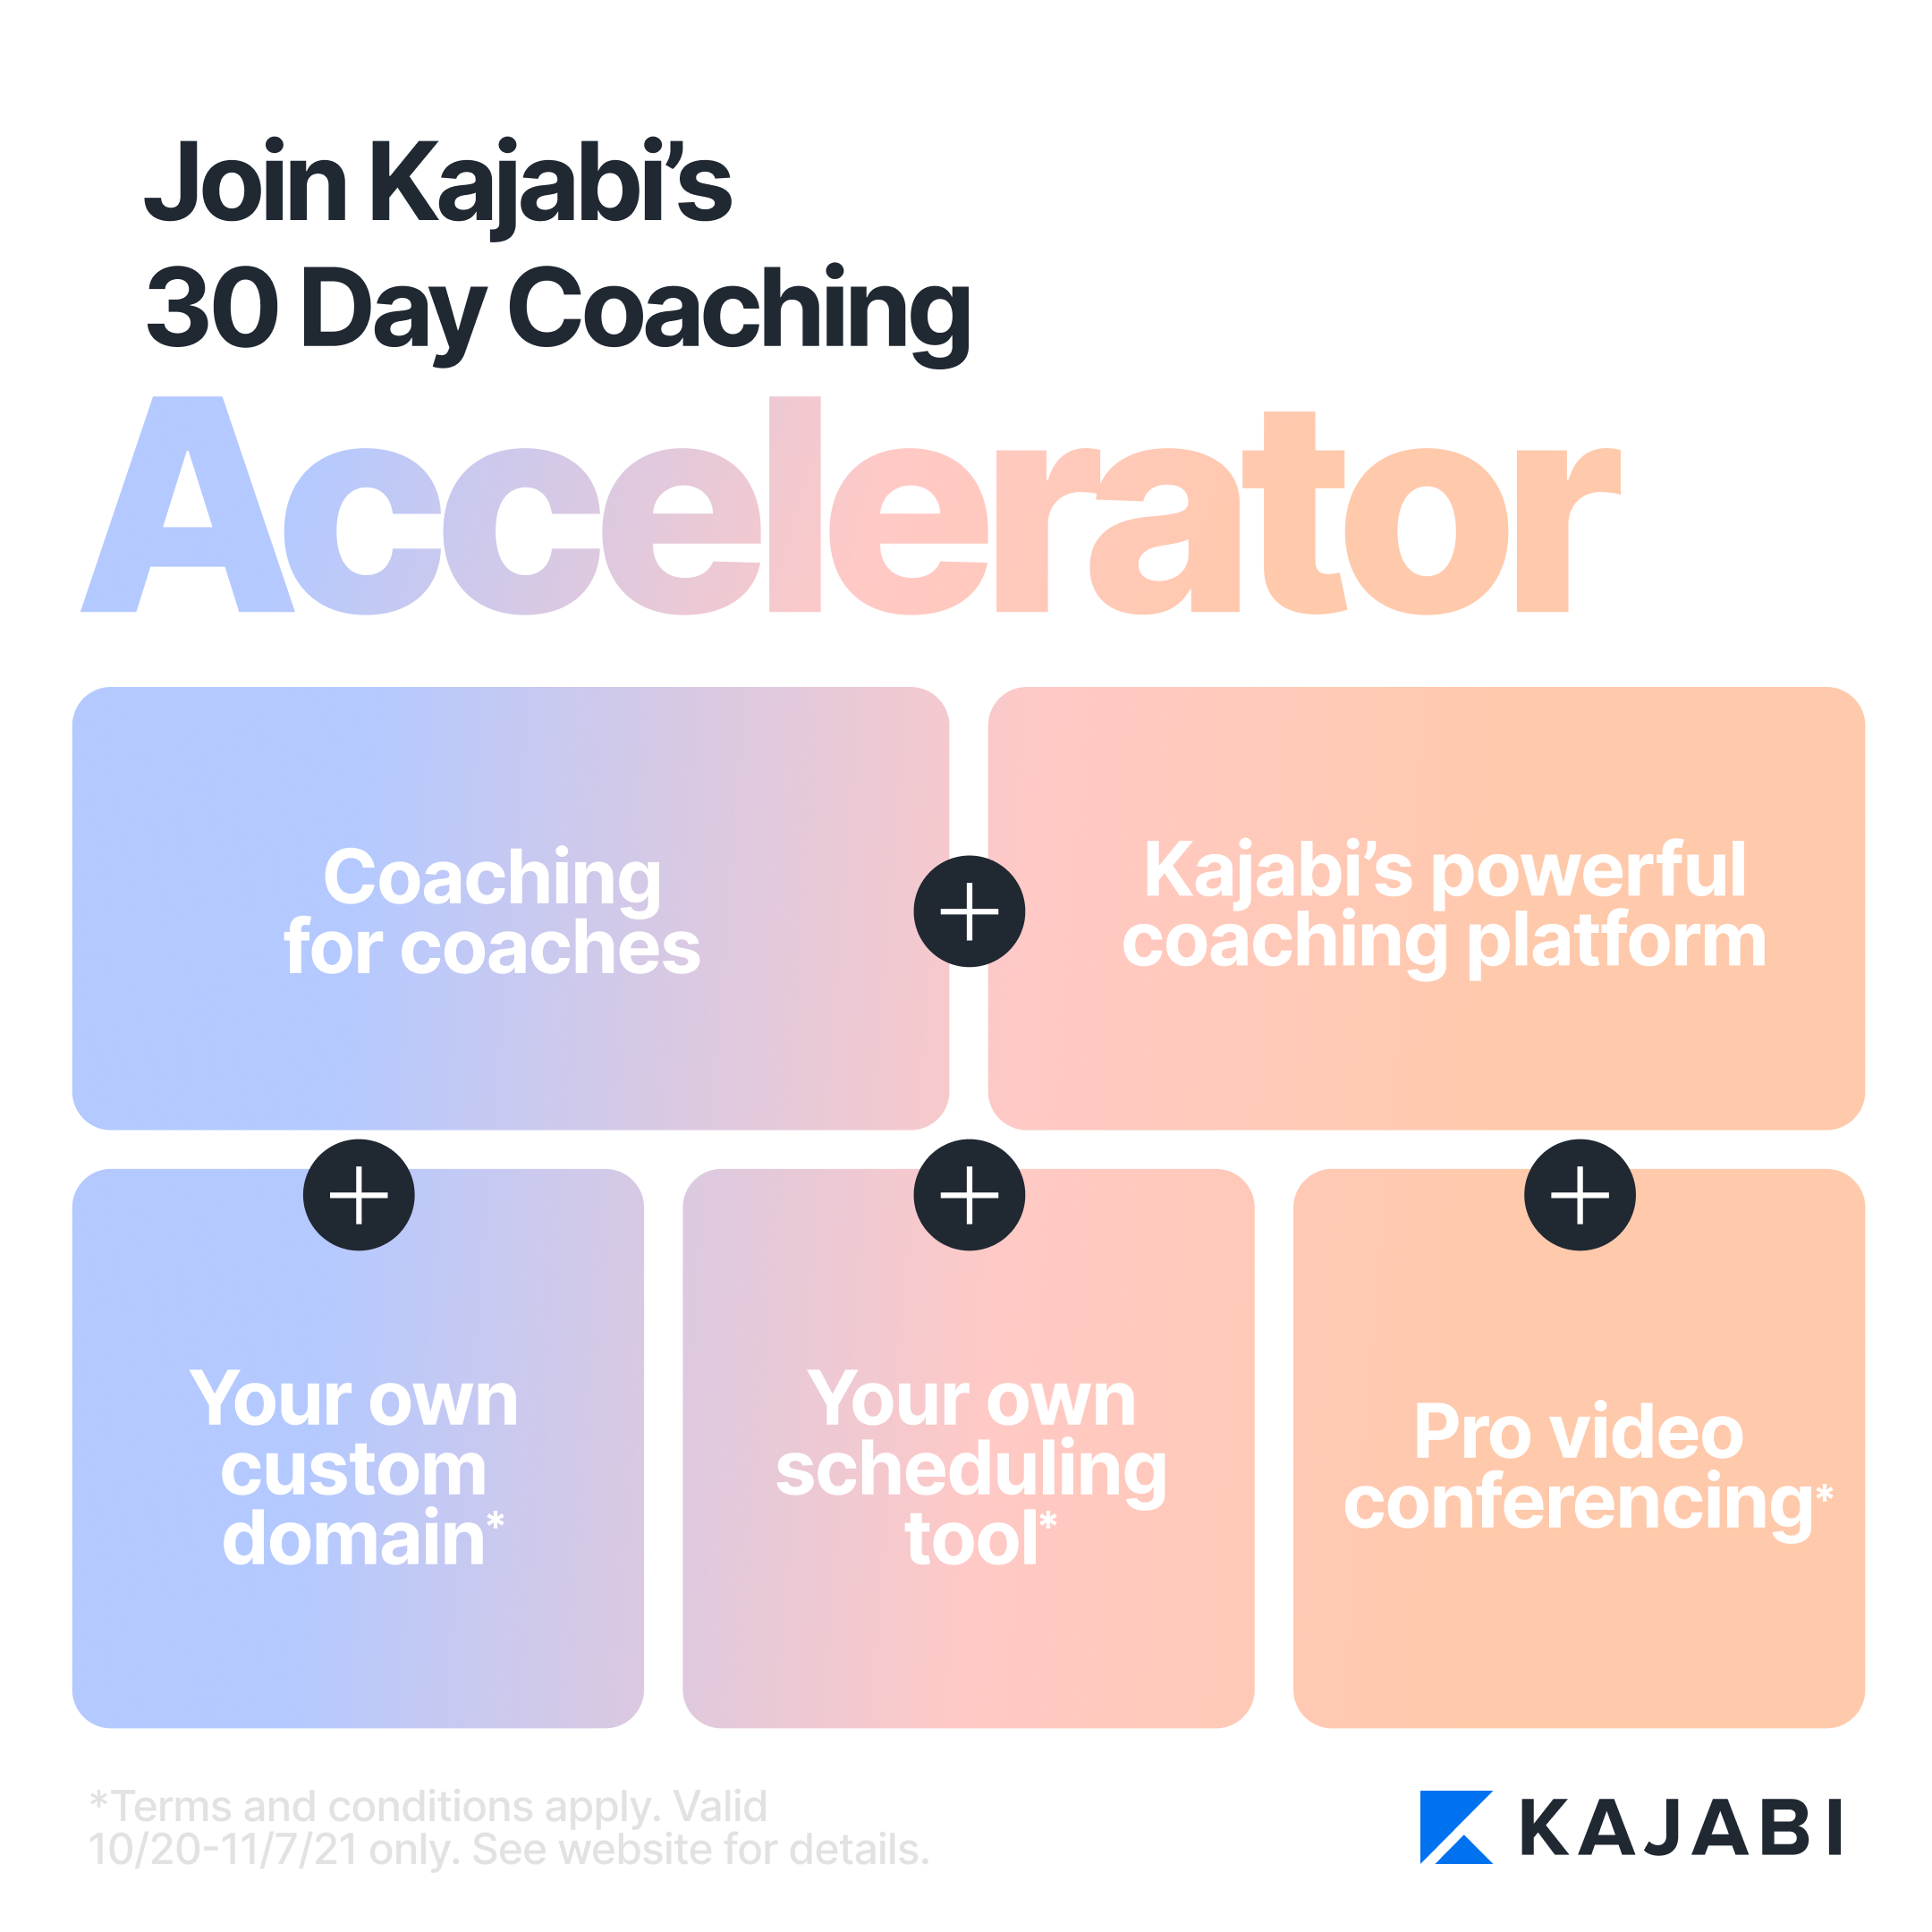 Kajabi 30 day coach accelerator